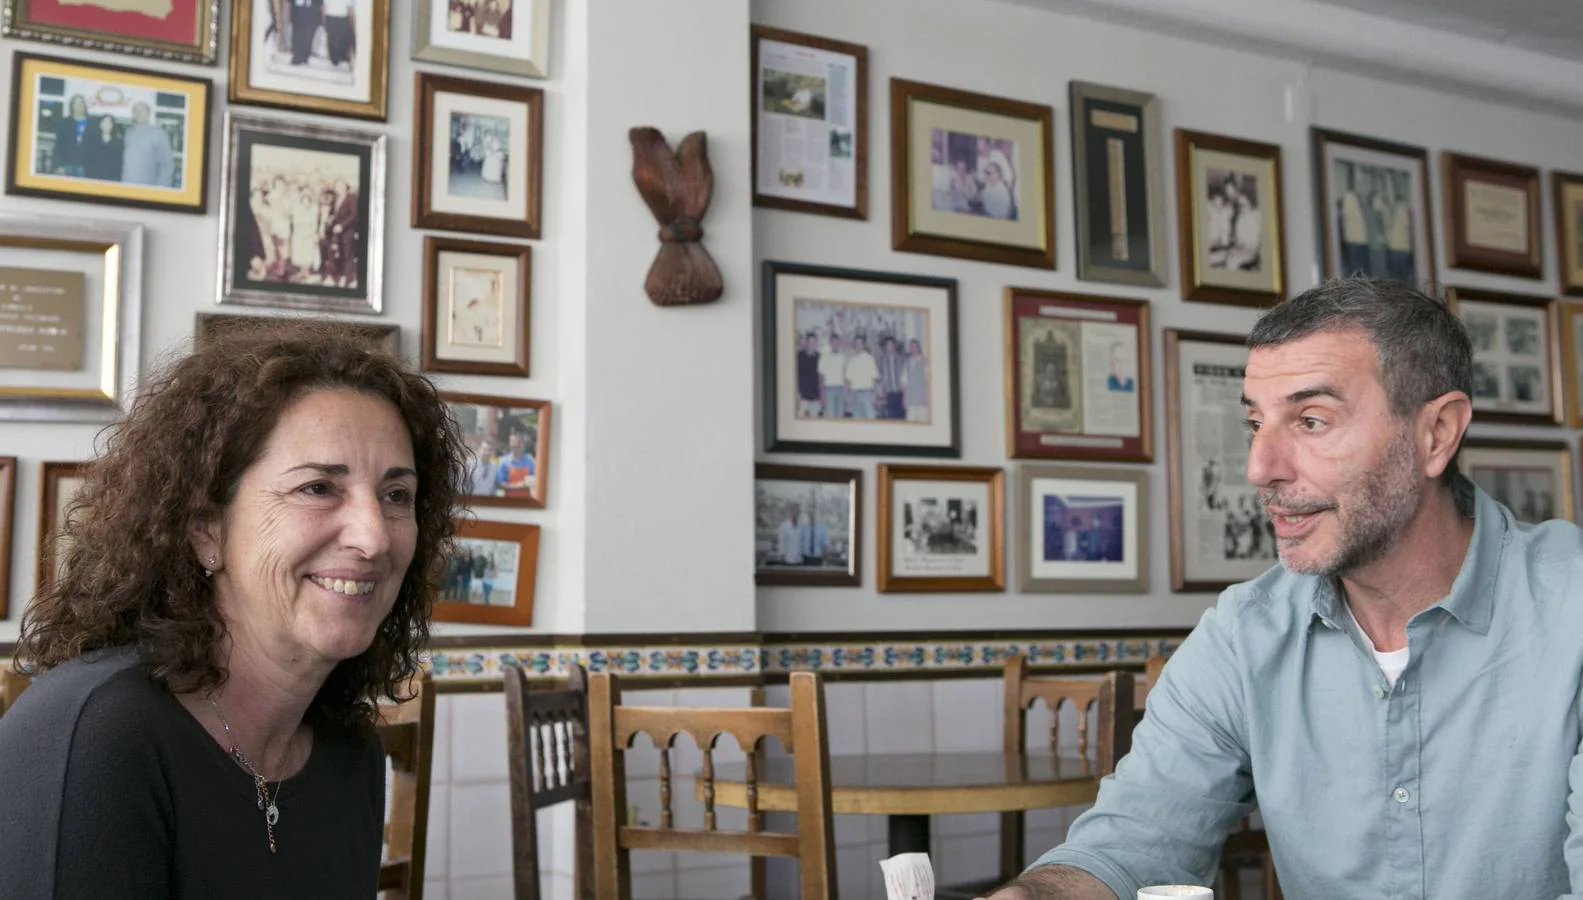 Daniel y Carmen Tortajada, nietos del fundador de la Horchatería Daniel de Alboraya, muestran imágenes históricas del local y el ingrediente de la bebida. Valencia tendrá pronto el primer establecimiento de Daniel.